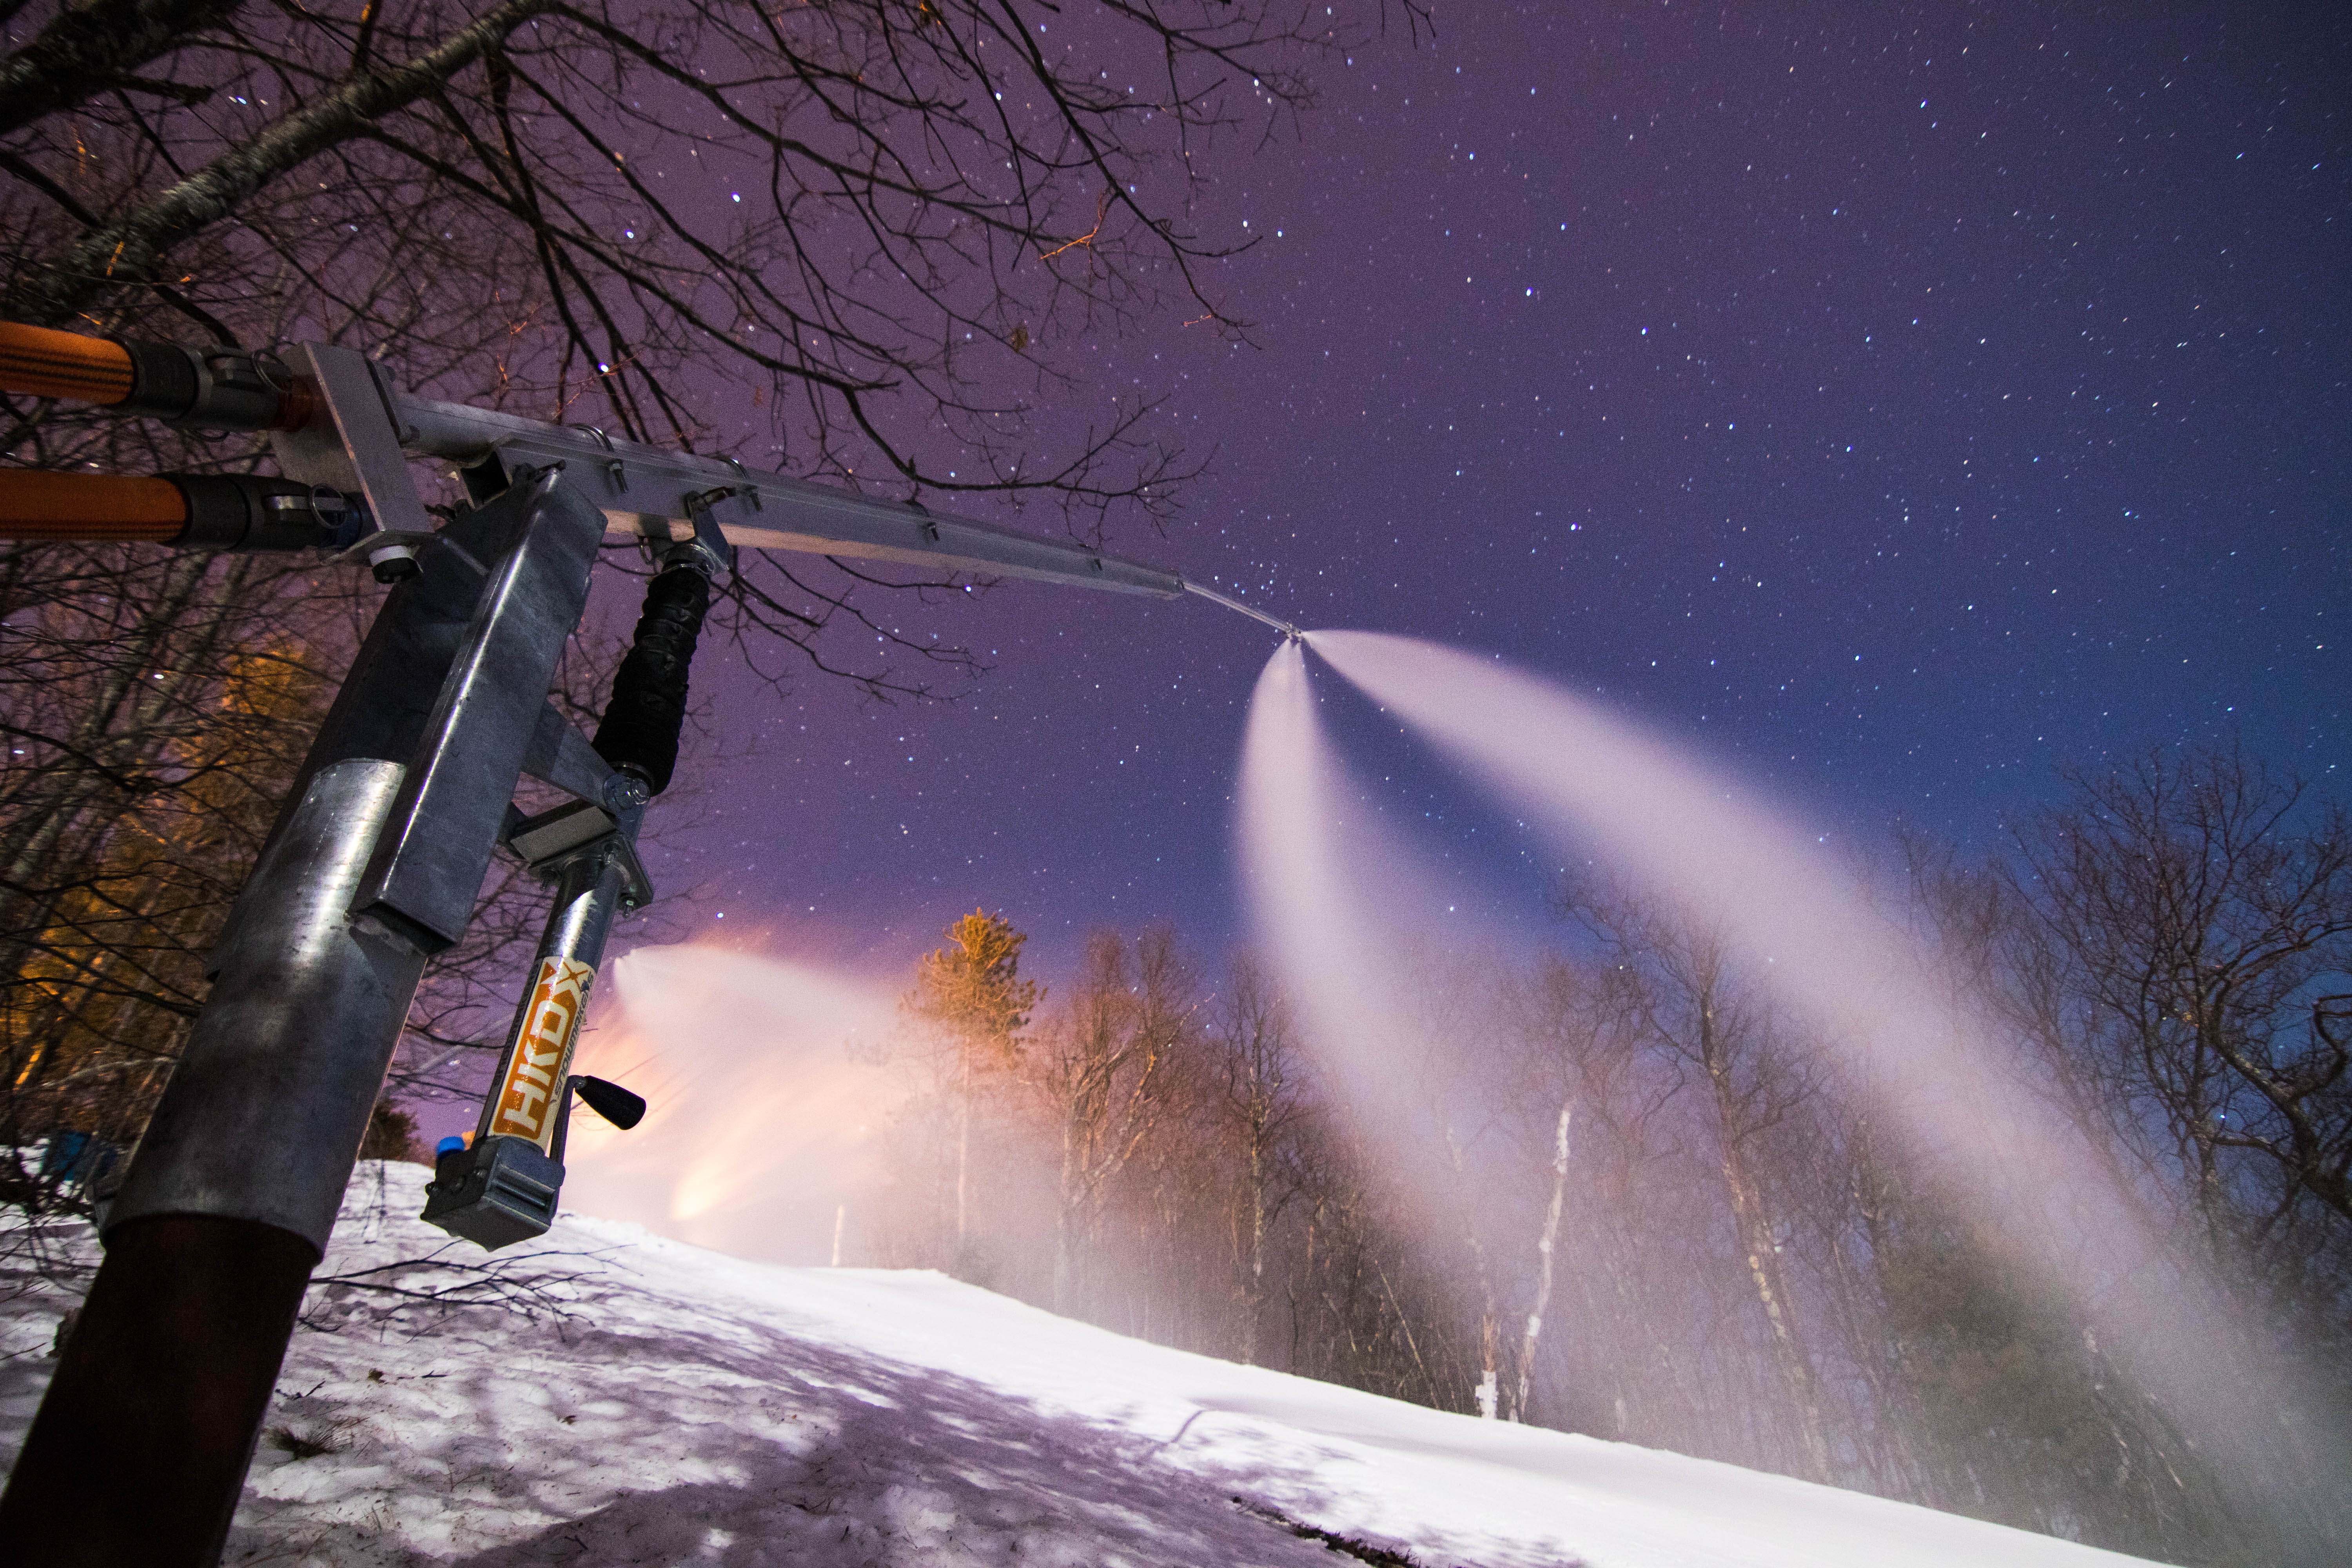 Snow guns at night